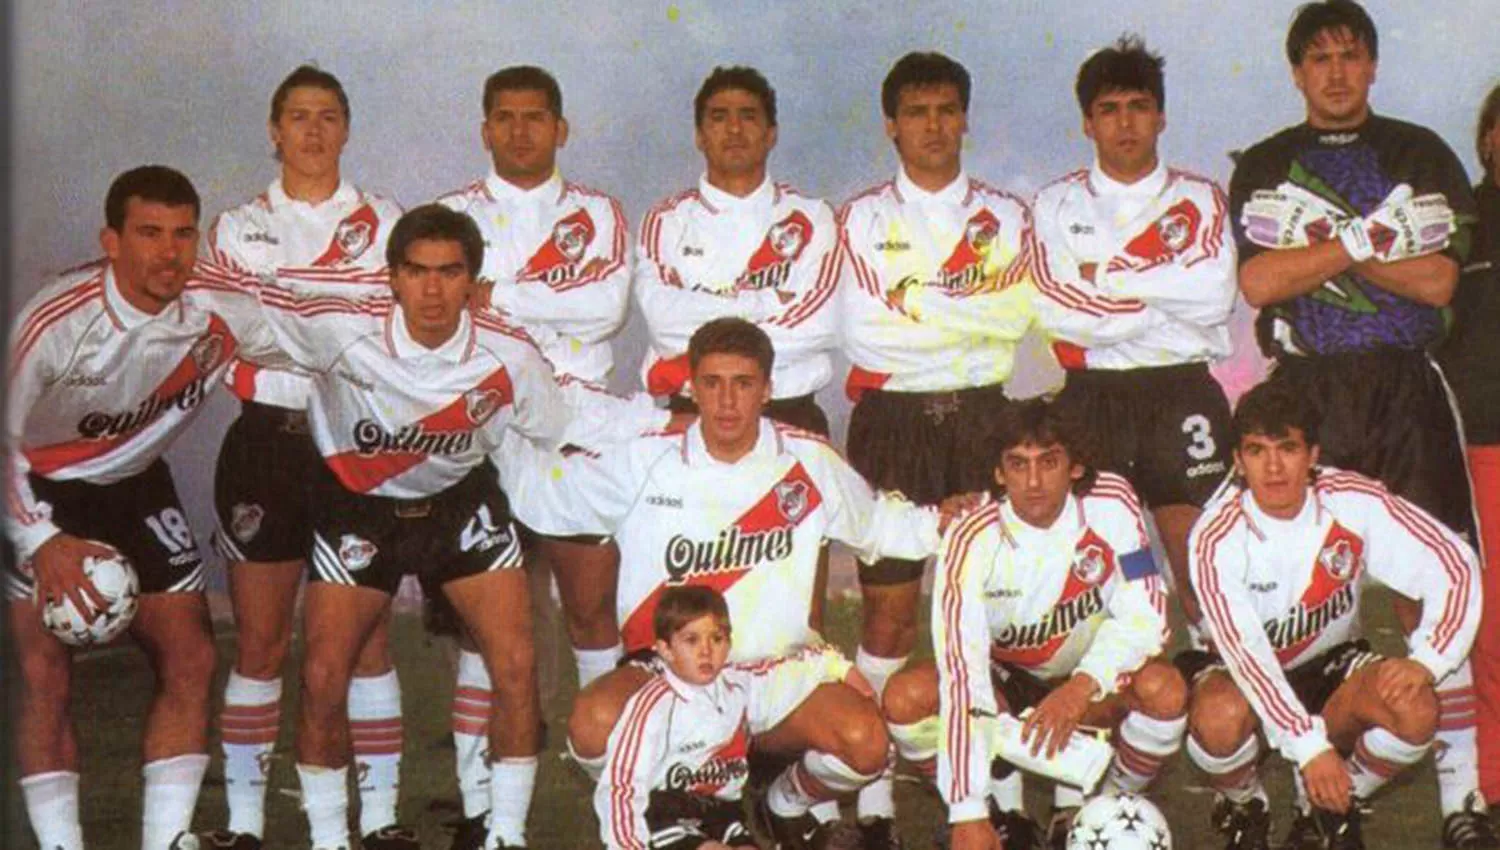 Una de las formaciones del River de 1996. De pie: Almeyda, Gómez, Hernán Díaz, Celso Ayala, Rivarola y Burgos. Agachados: Cedrés, Escudero, Crespo, Francescoli y Ortega.